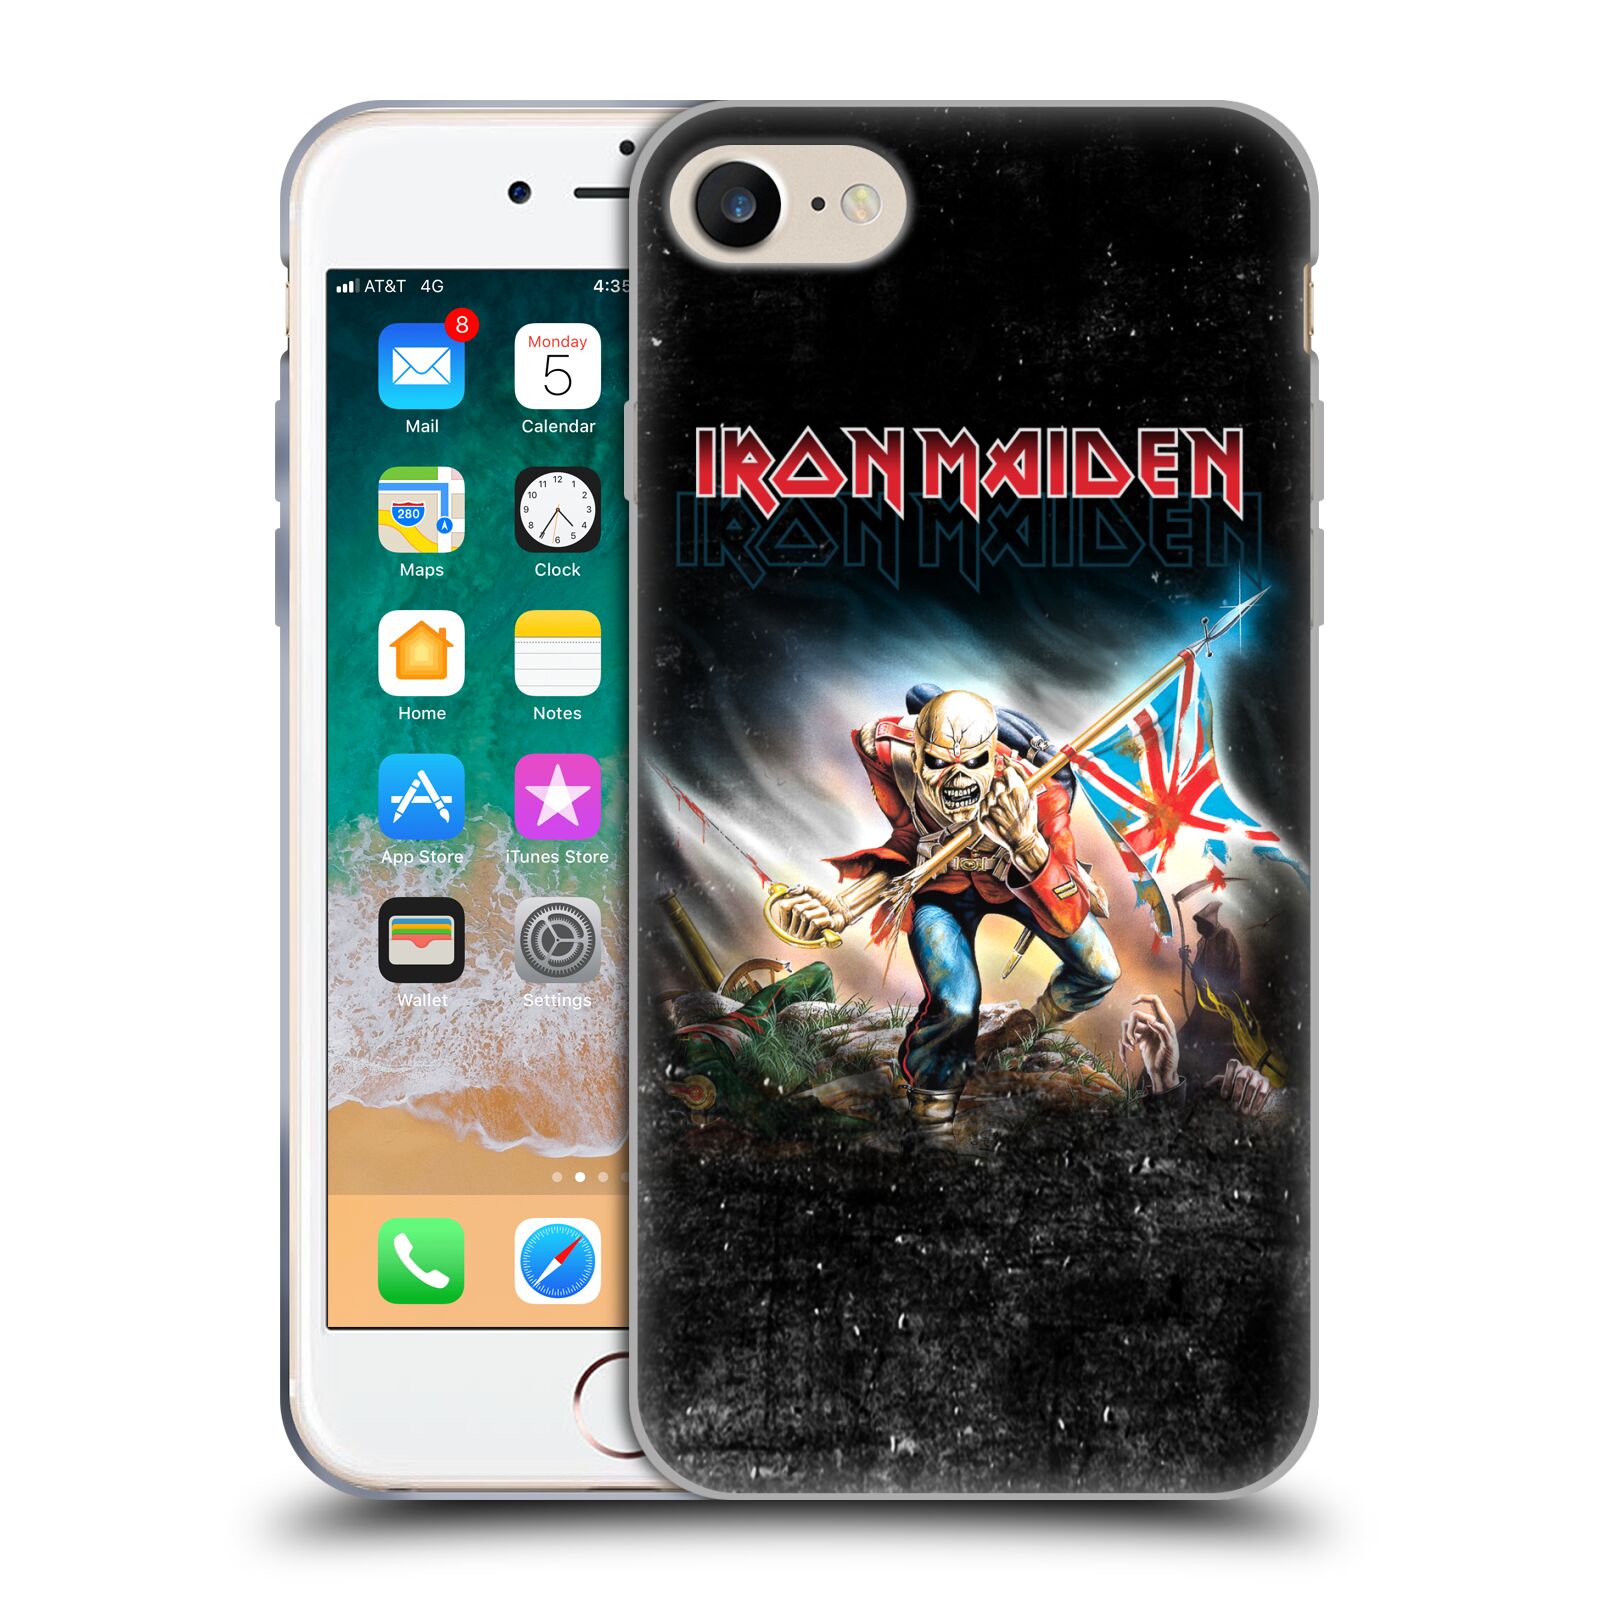 Silikonové pouzdro na mobil Apple iPhone 8 - Head Case - Iron Maiden - Trooper 2016 (Silikonový kryt či obal na mobilní telefon Apple iPhone 8 s motivem Iron Maiden - Trooper 2016)